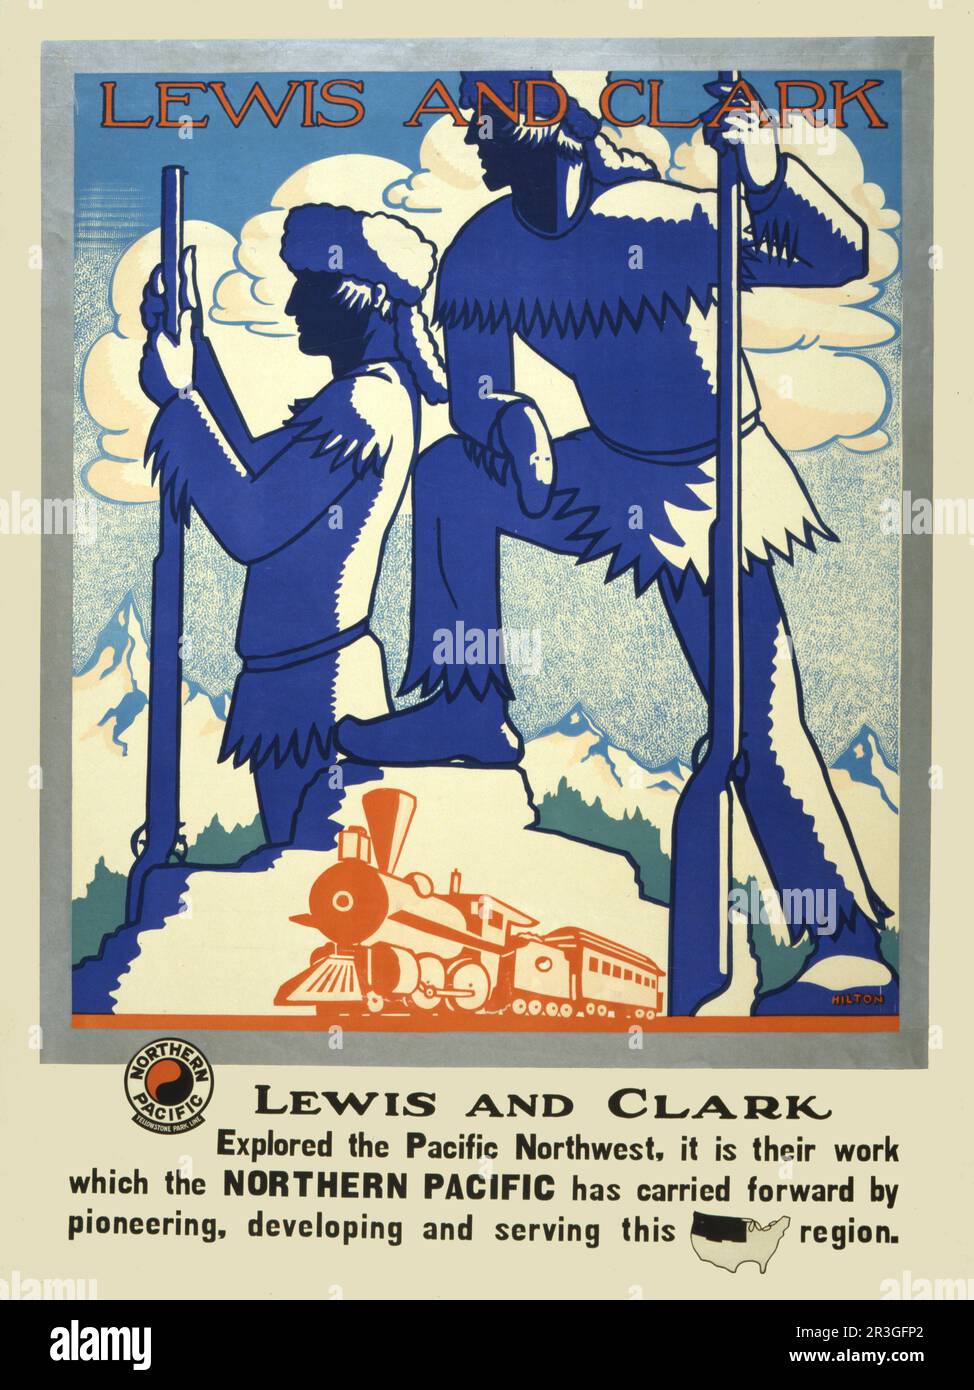 Affiche de voyage vintage montrant des silhouettes de Lewis et Clark avec train à vapeur en premier plan, vers 1920. Banque D'Images